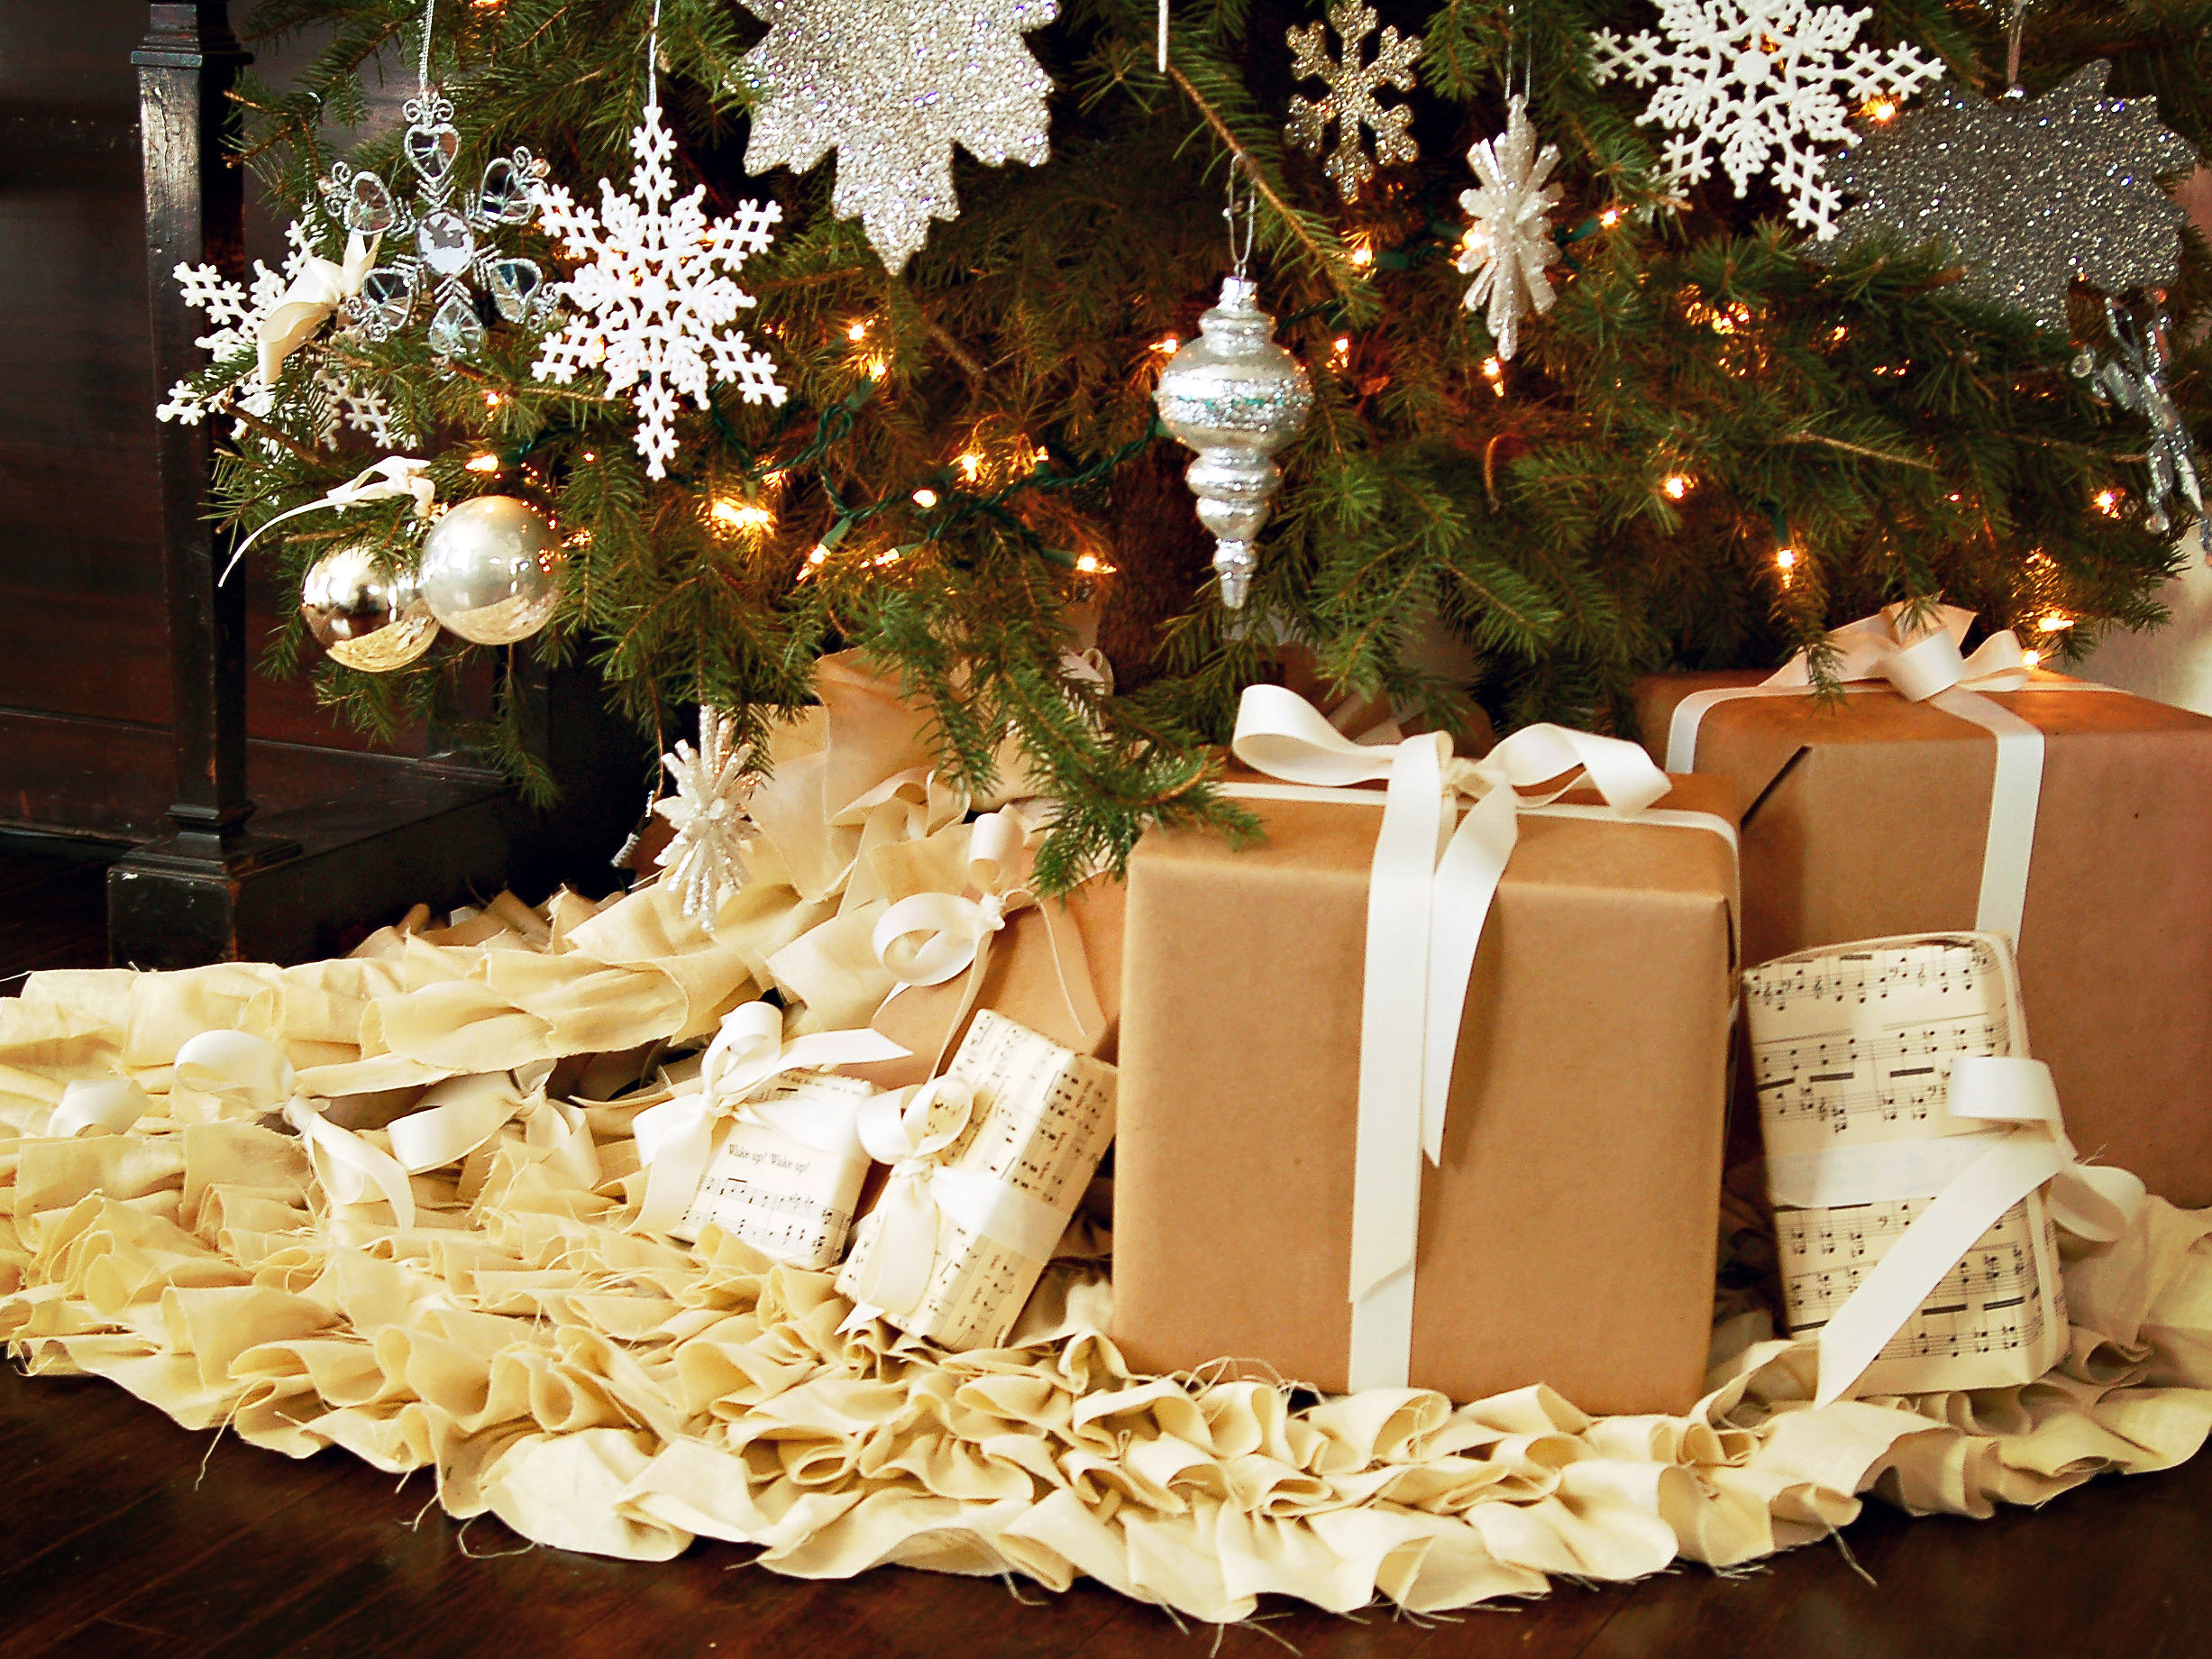 Подарки к рождеству 1997. Подарки под ёлкой. Рождественские подарки. Новогодняя елка с подарками. Подарочки под елочкой.